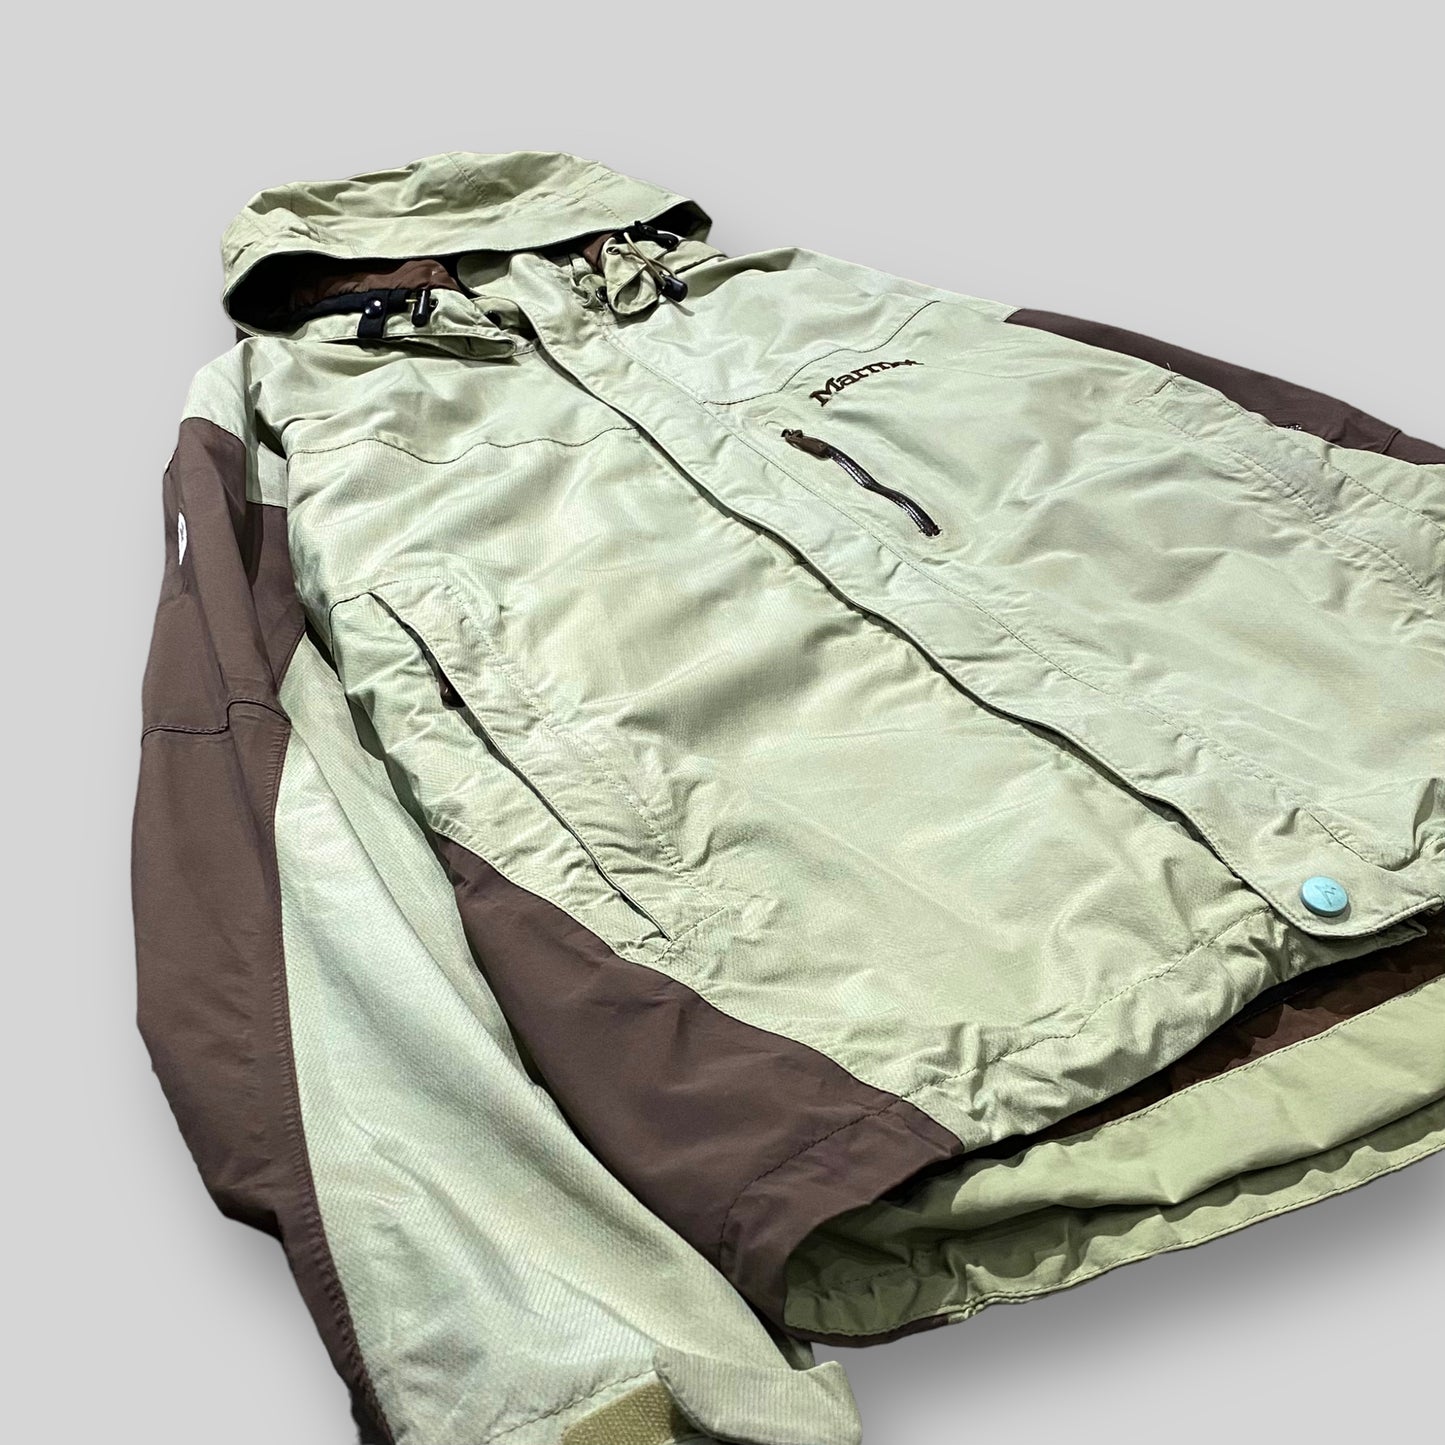 "Marmot" Mountain shell jacket